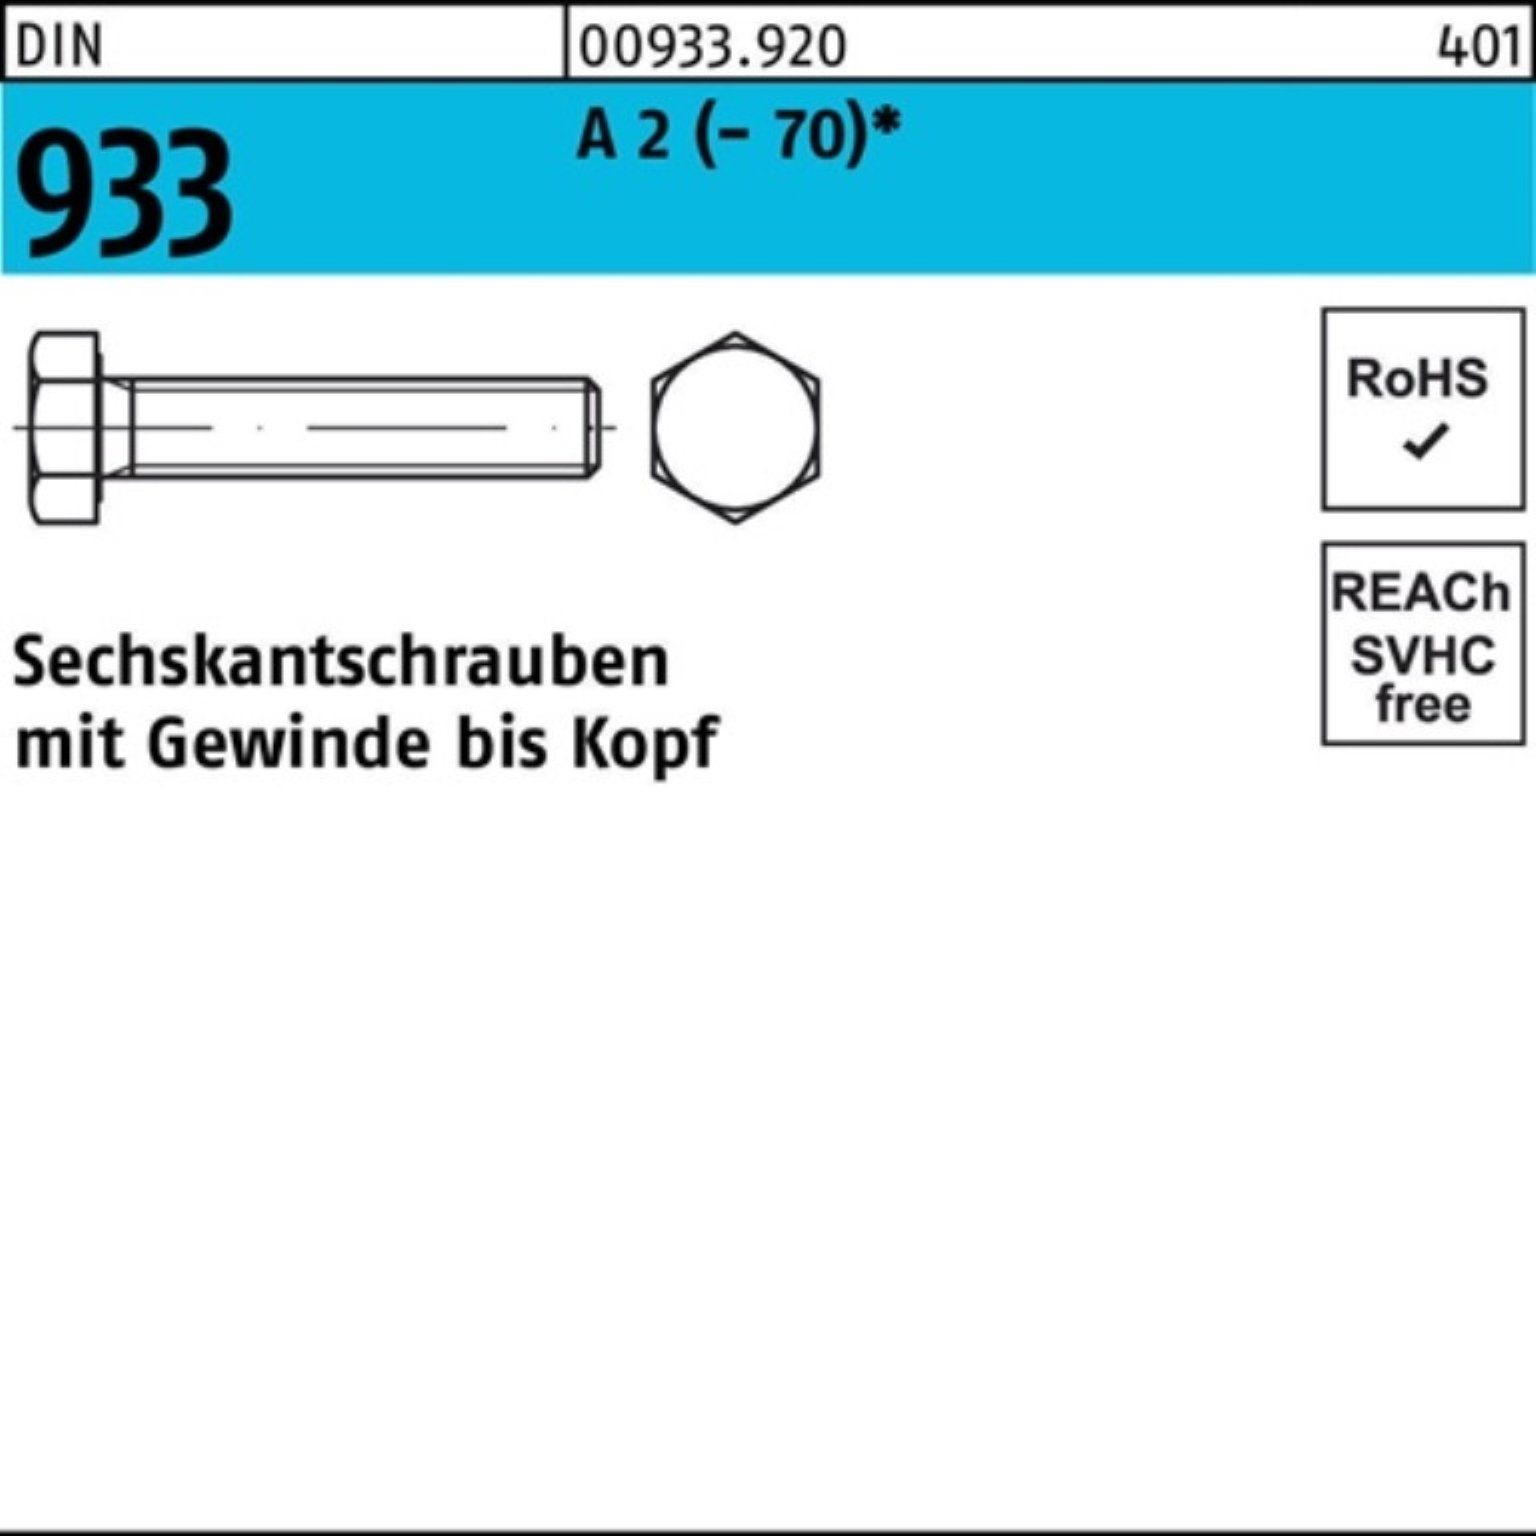 Reyher Sechskantschraube 100er Sechskantschraube M18x 2 Pack DIN Stück A (70) 933 25 VG 100